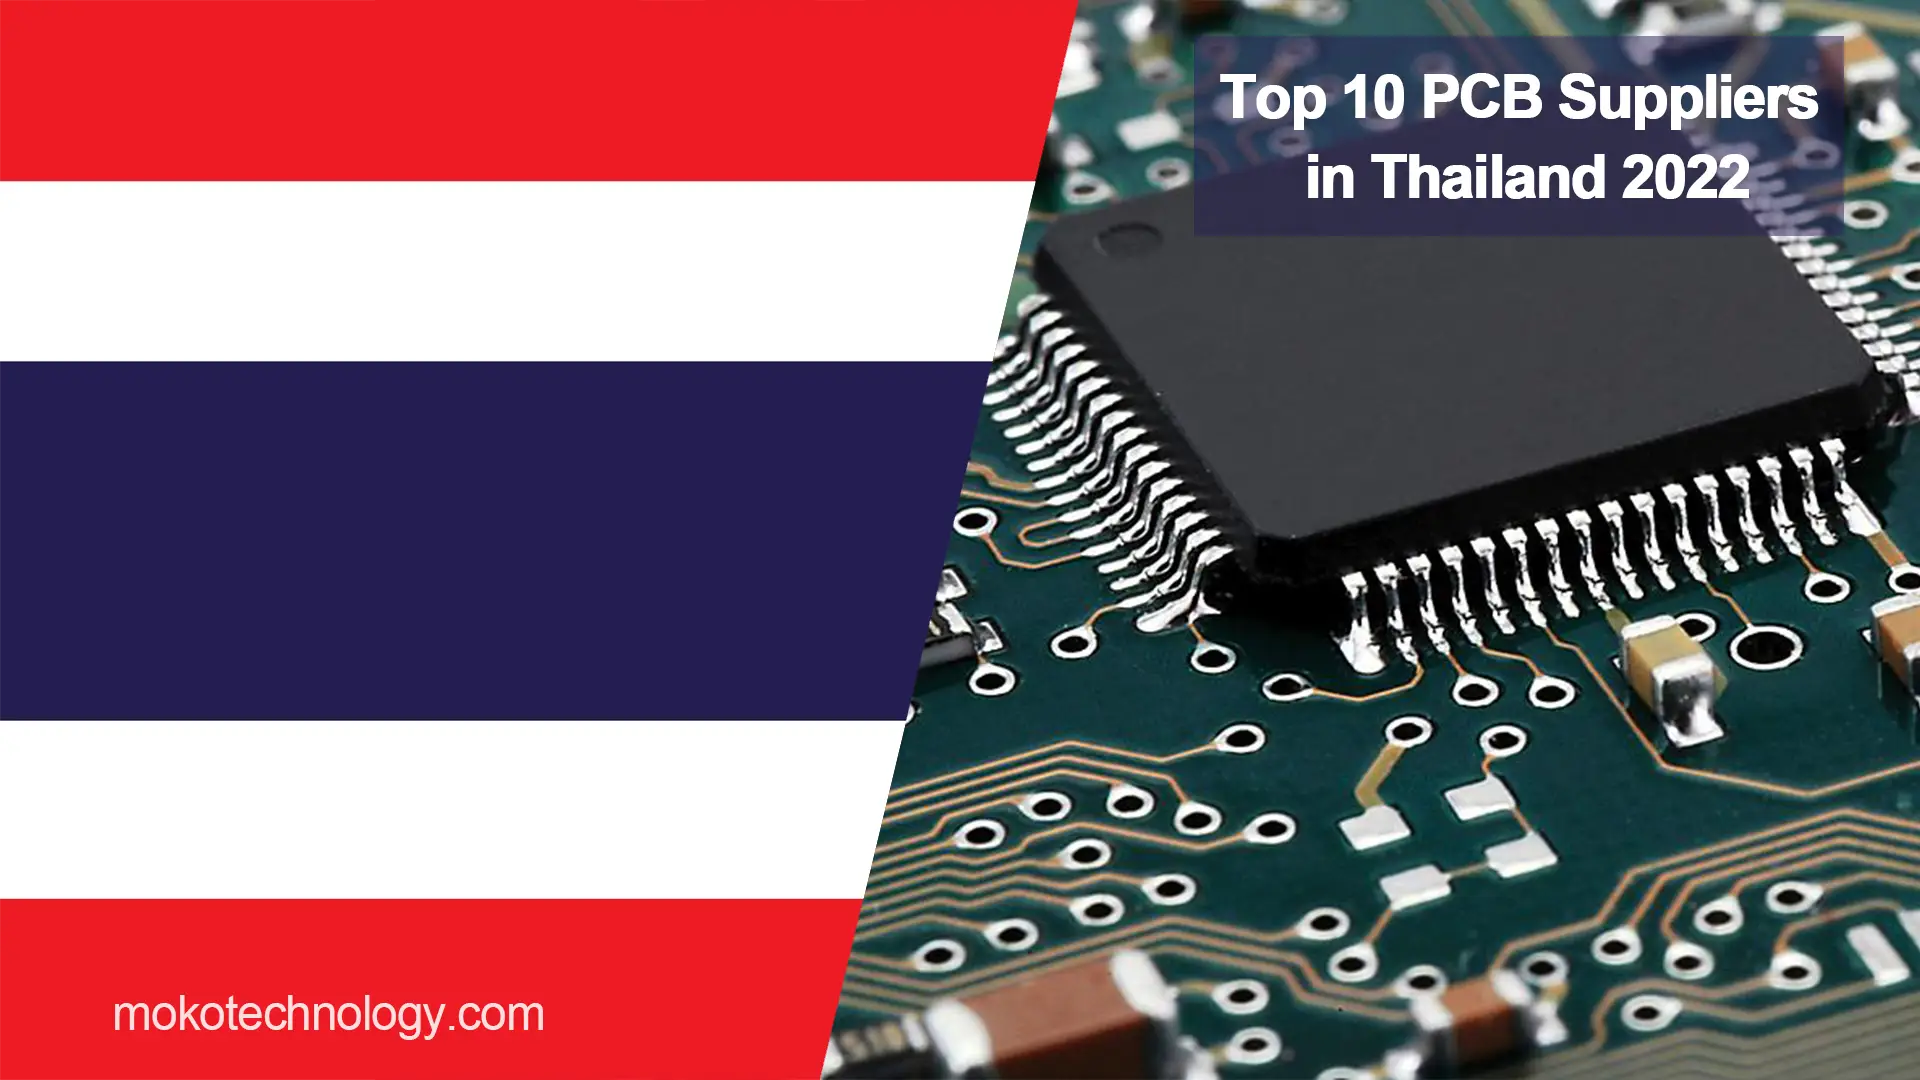 Top 10 PCB-verskaffers in Thailand 2022